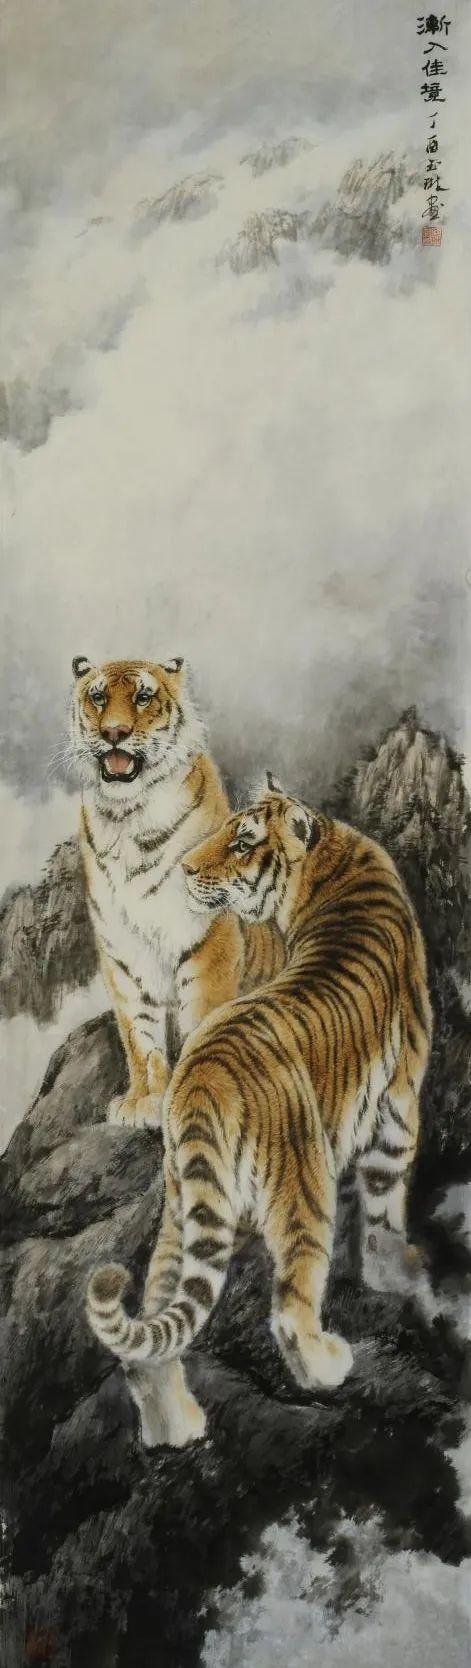 画老虎的画家 西安画老虎特别出名的画家